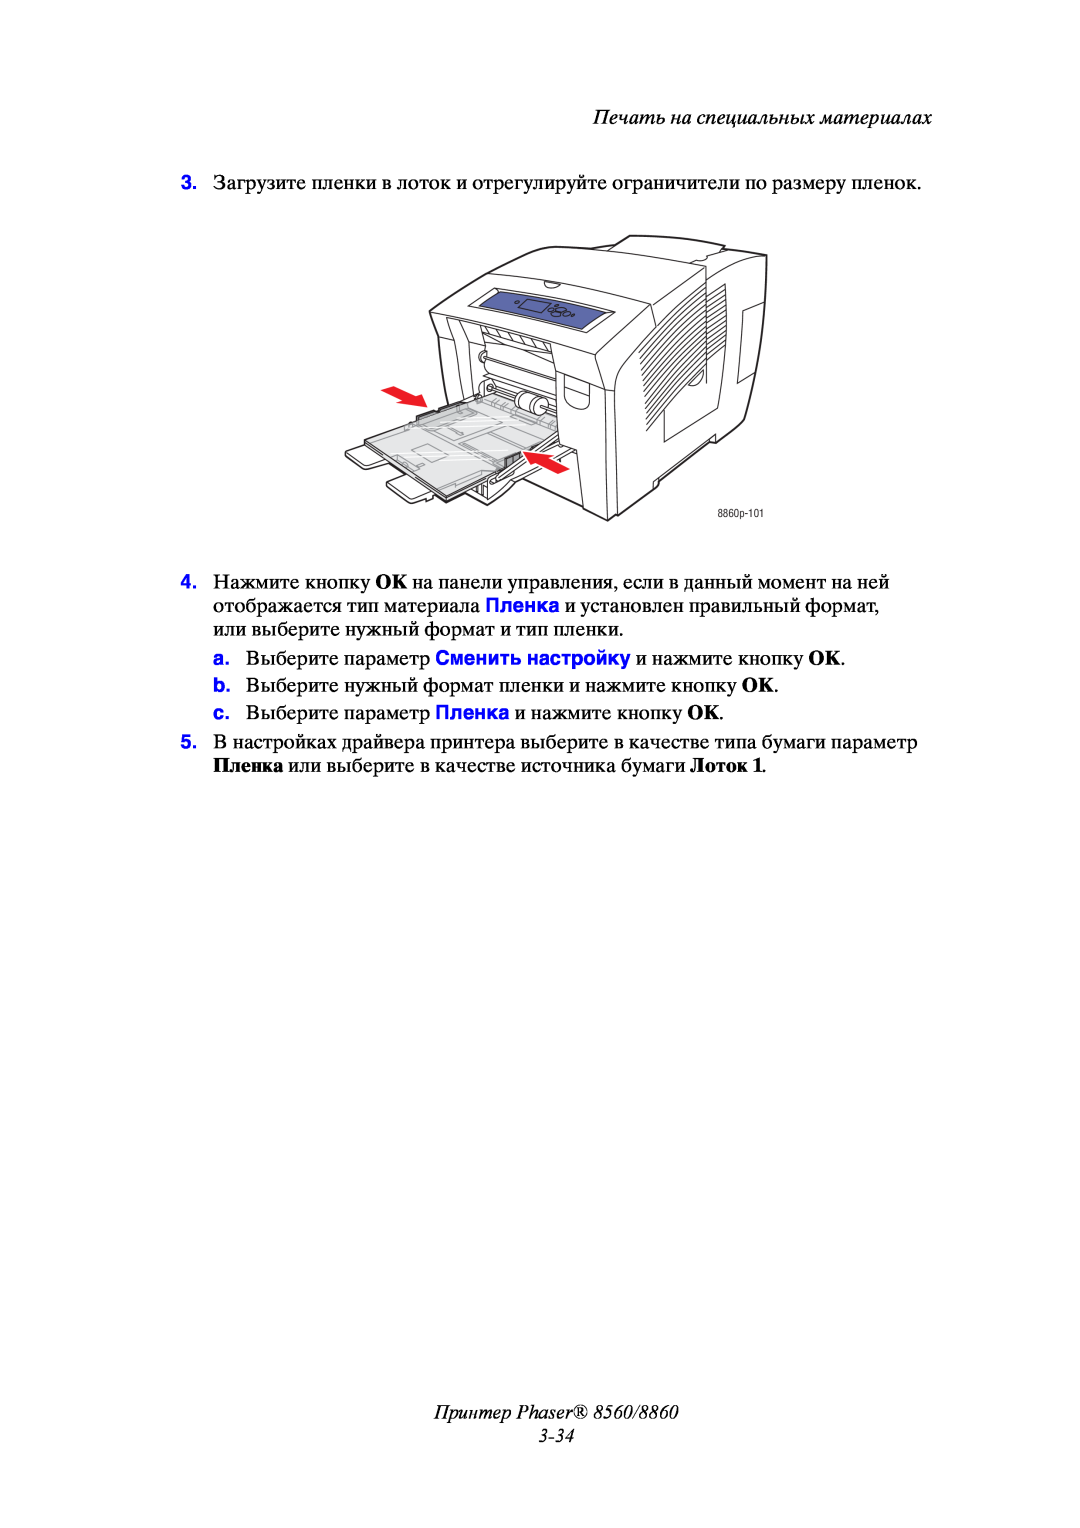 Xerox manual Принтер Phaser 8560/8860 3-34, Печать на специальных материалах, 8860p-101 